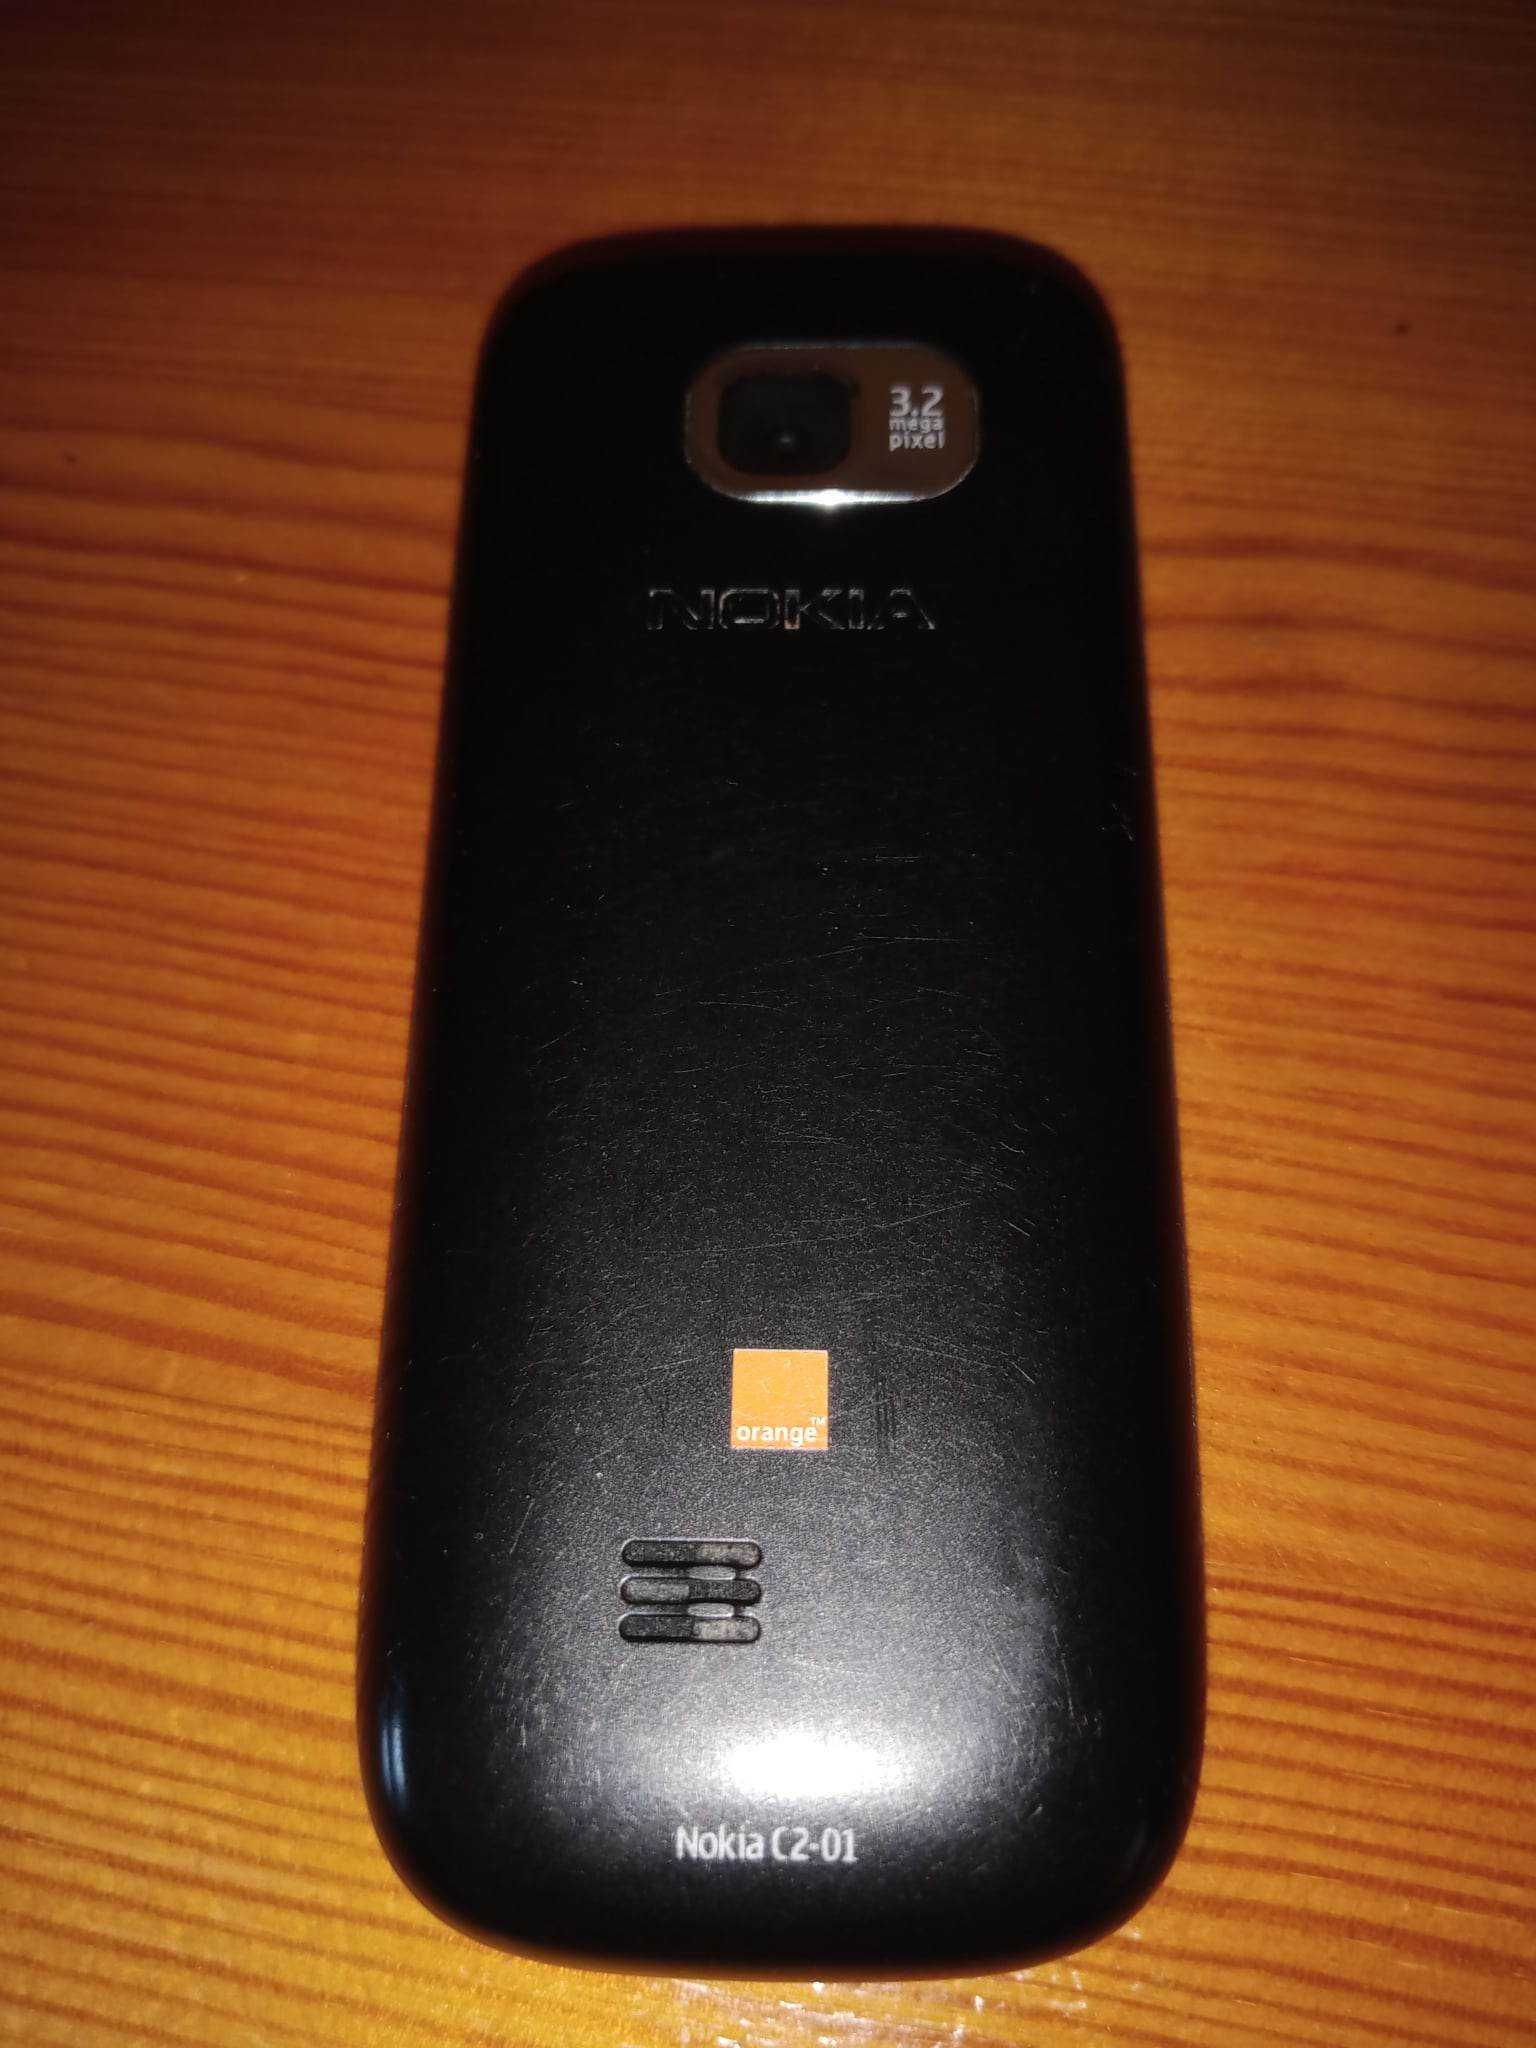 Telefon Nokia C2-01 sprawny